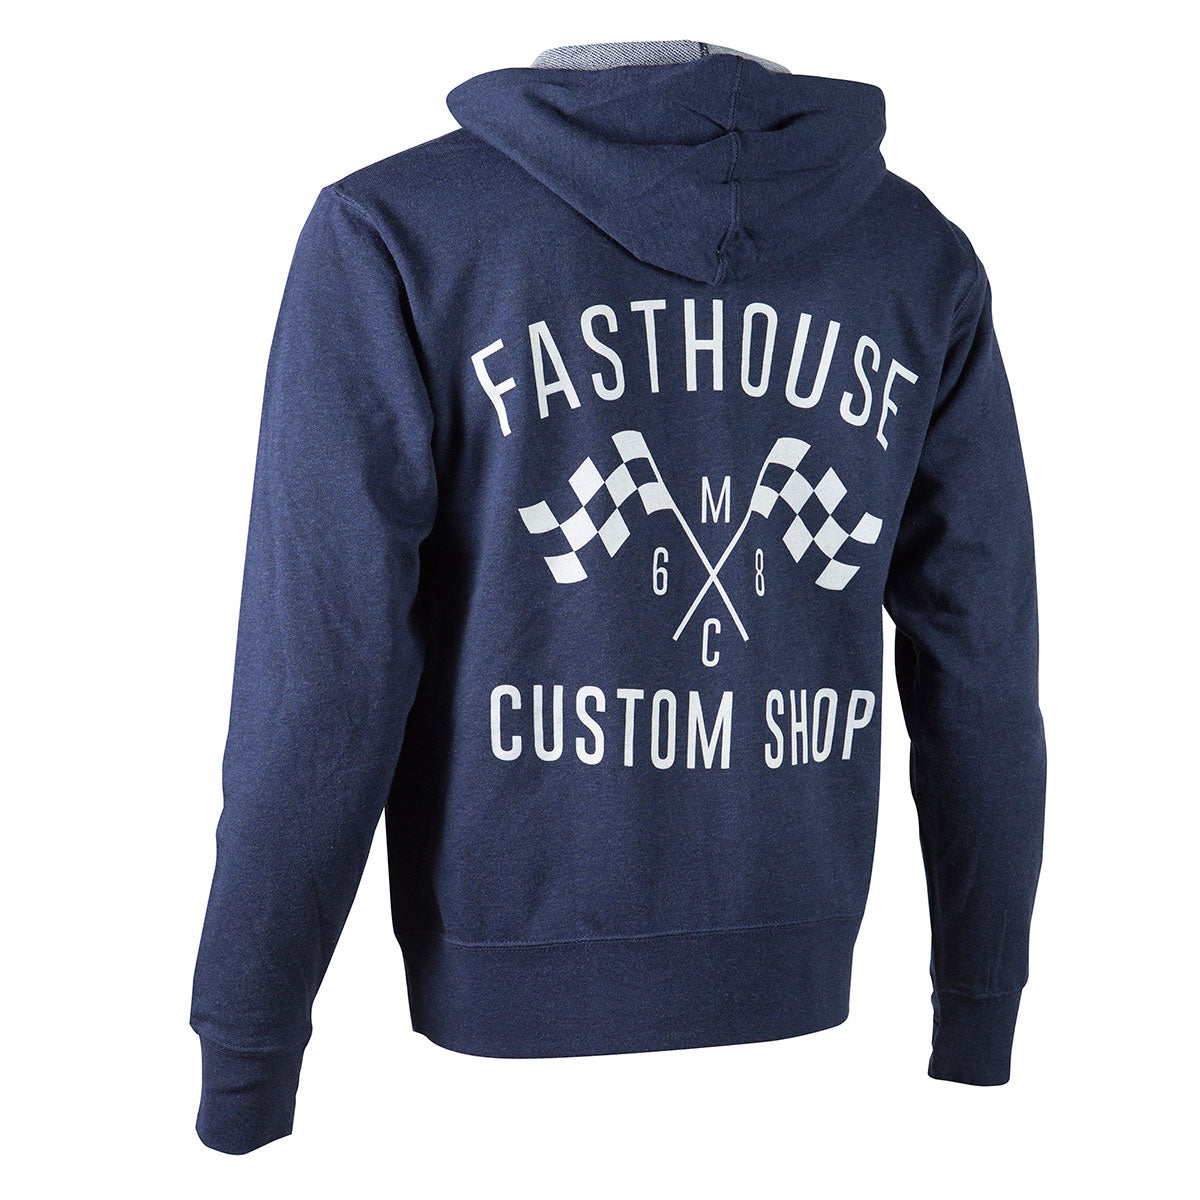 Fasthouse - Custom Shop Zip Up Hoodie - Navy